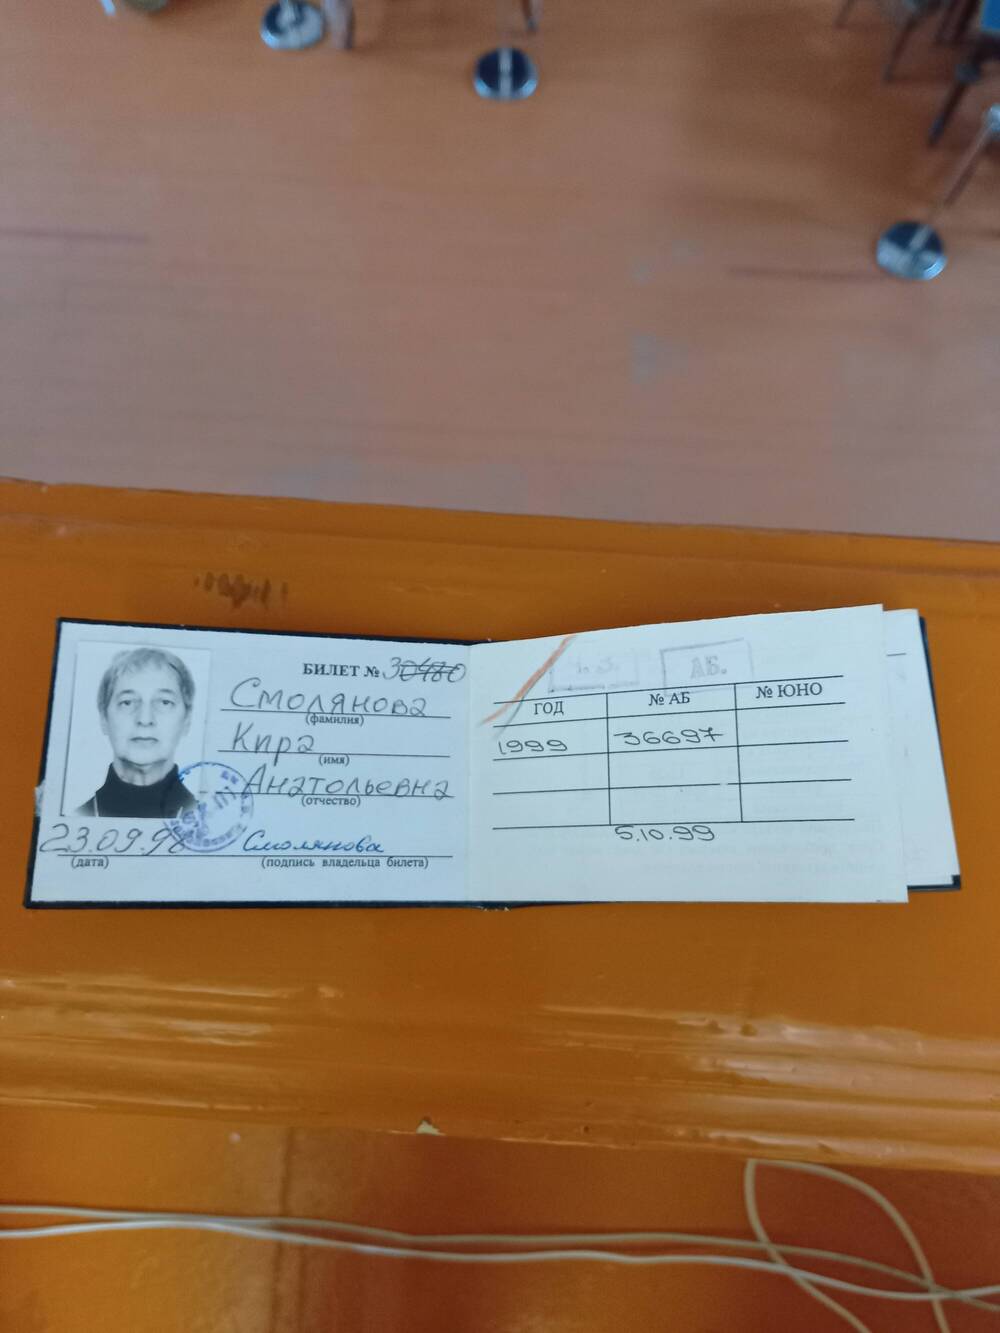 Читательский билет Смоляновой К.А. №30480 от 23.09.1998г.